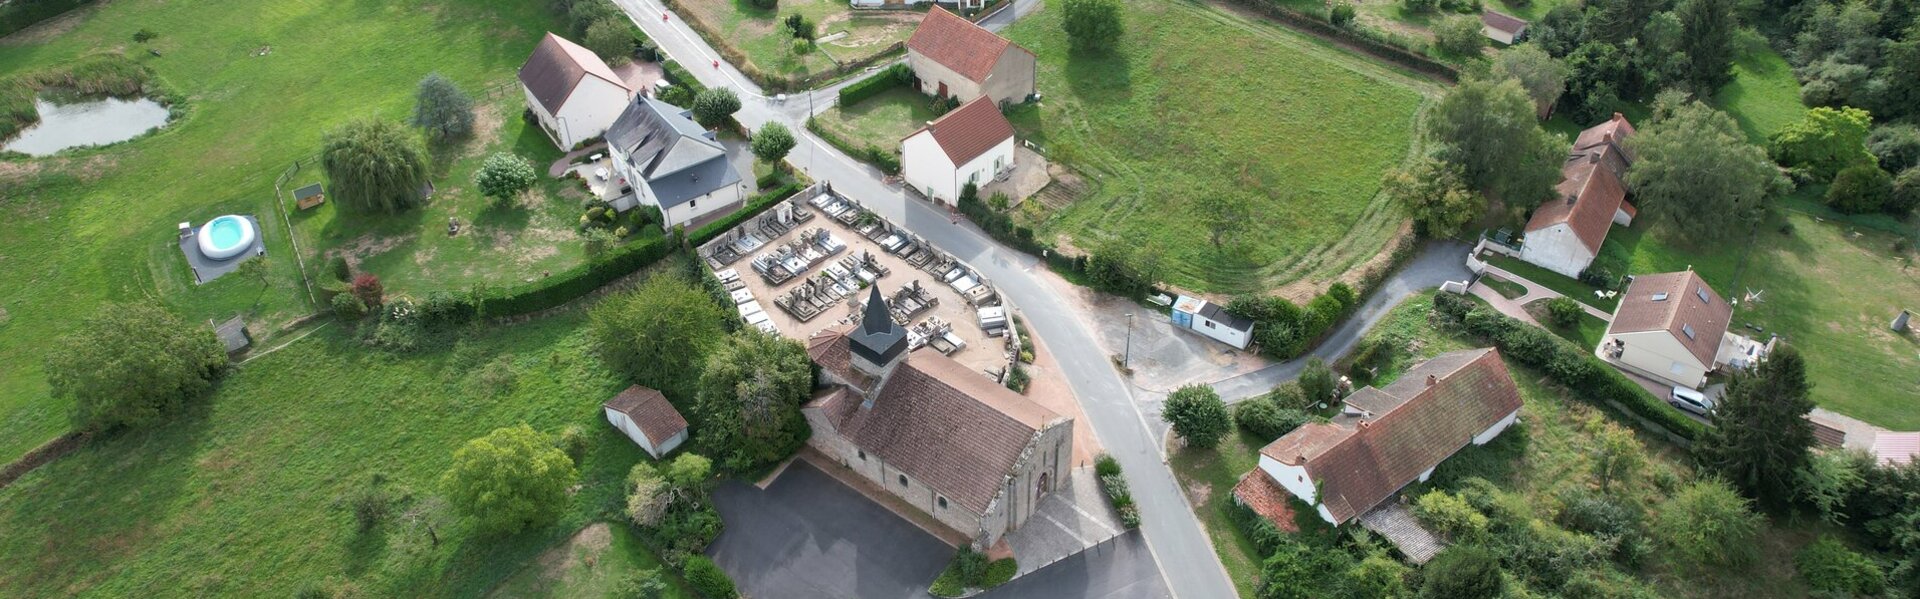 Mairie de Durdat-Larequille - Allier (03)